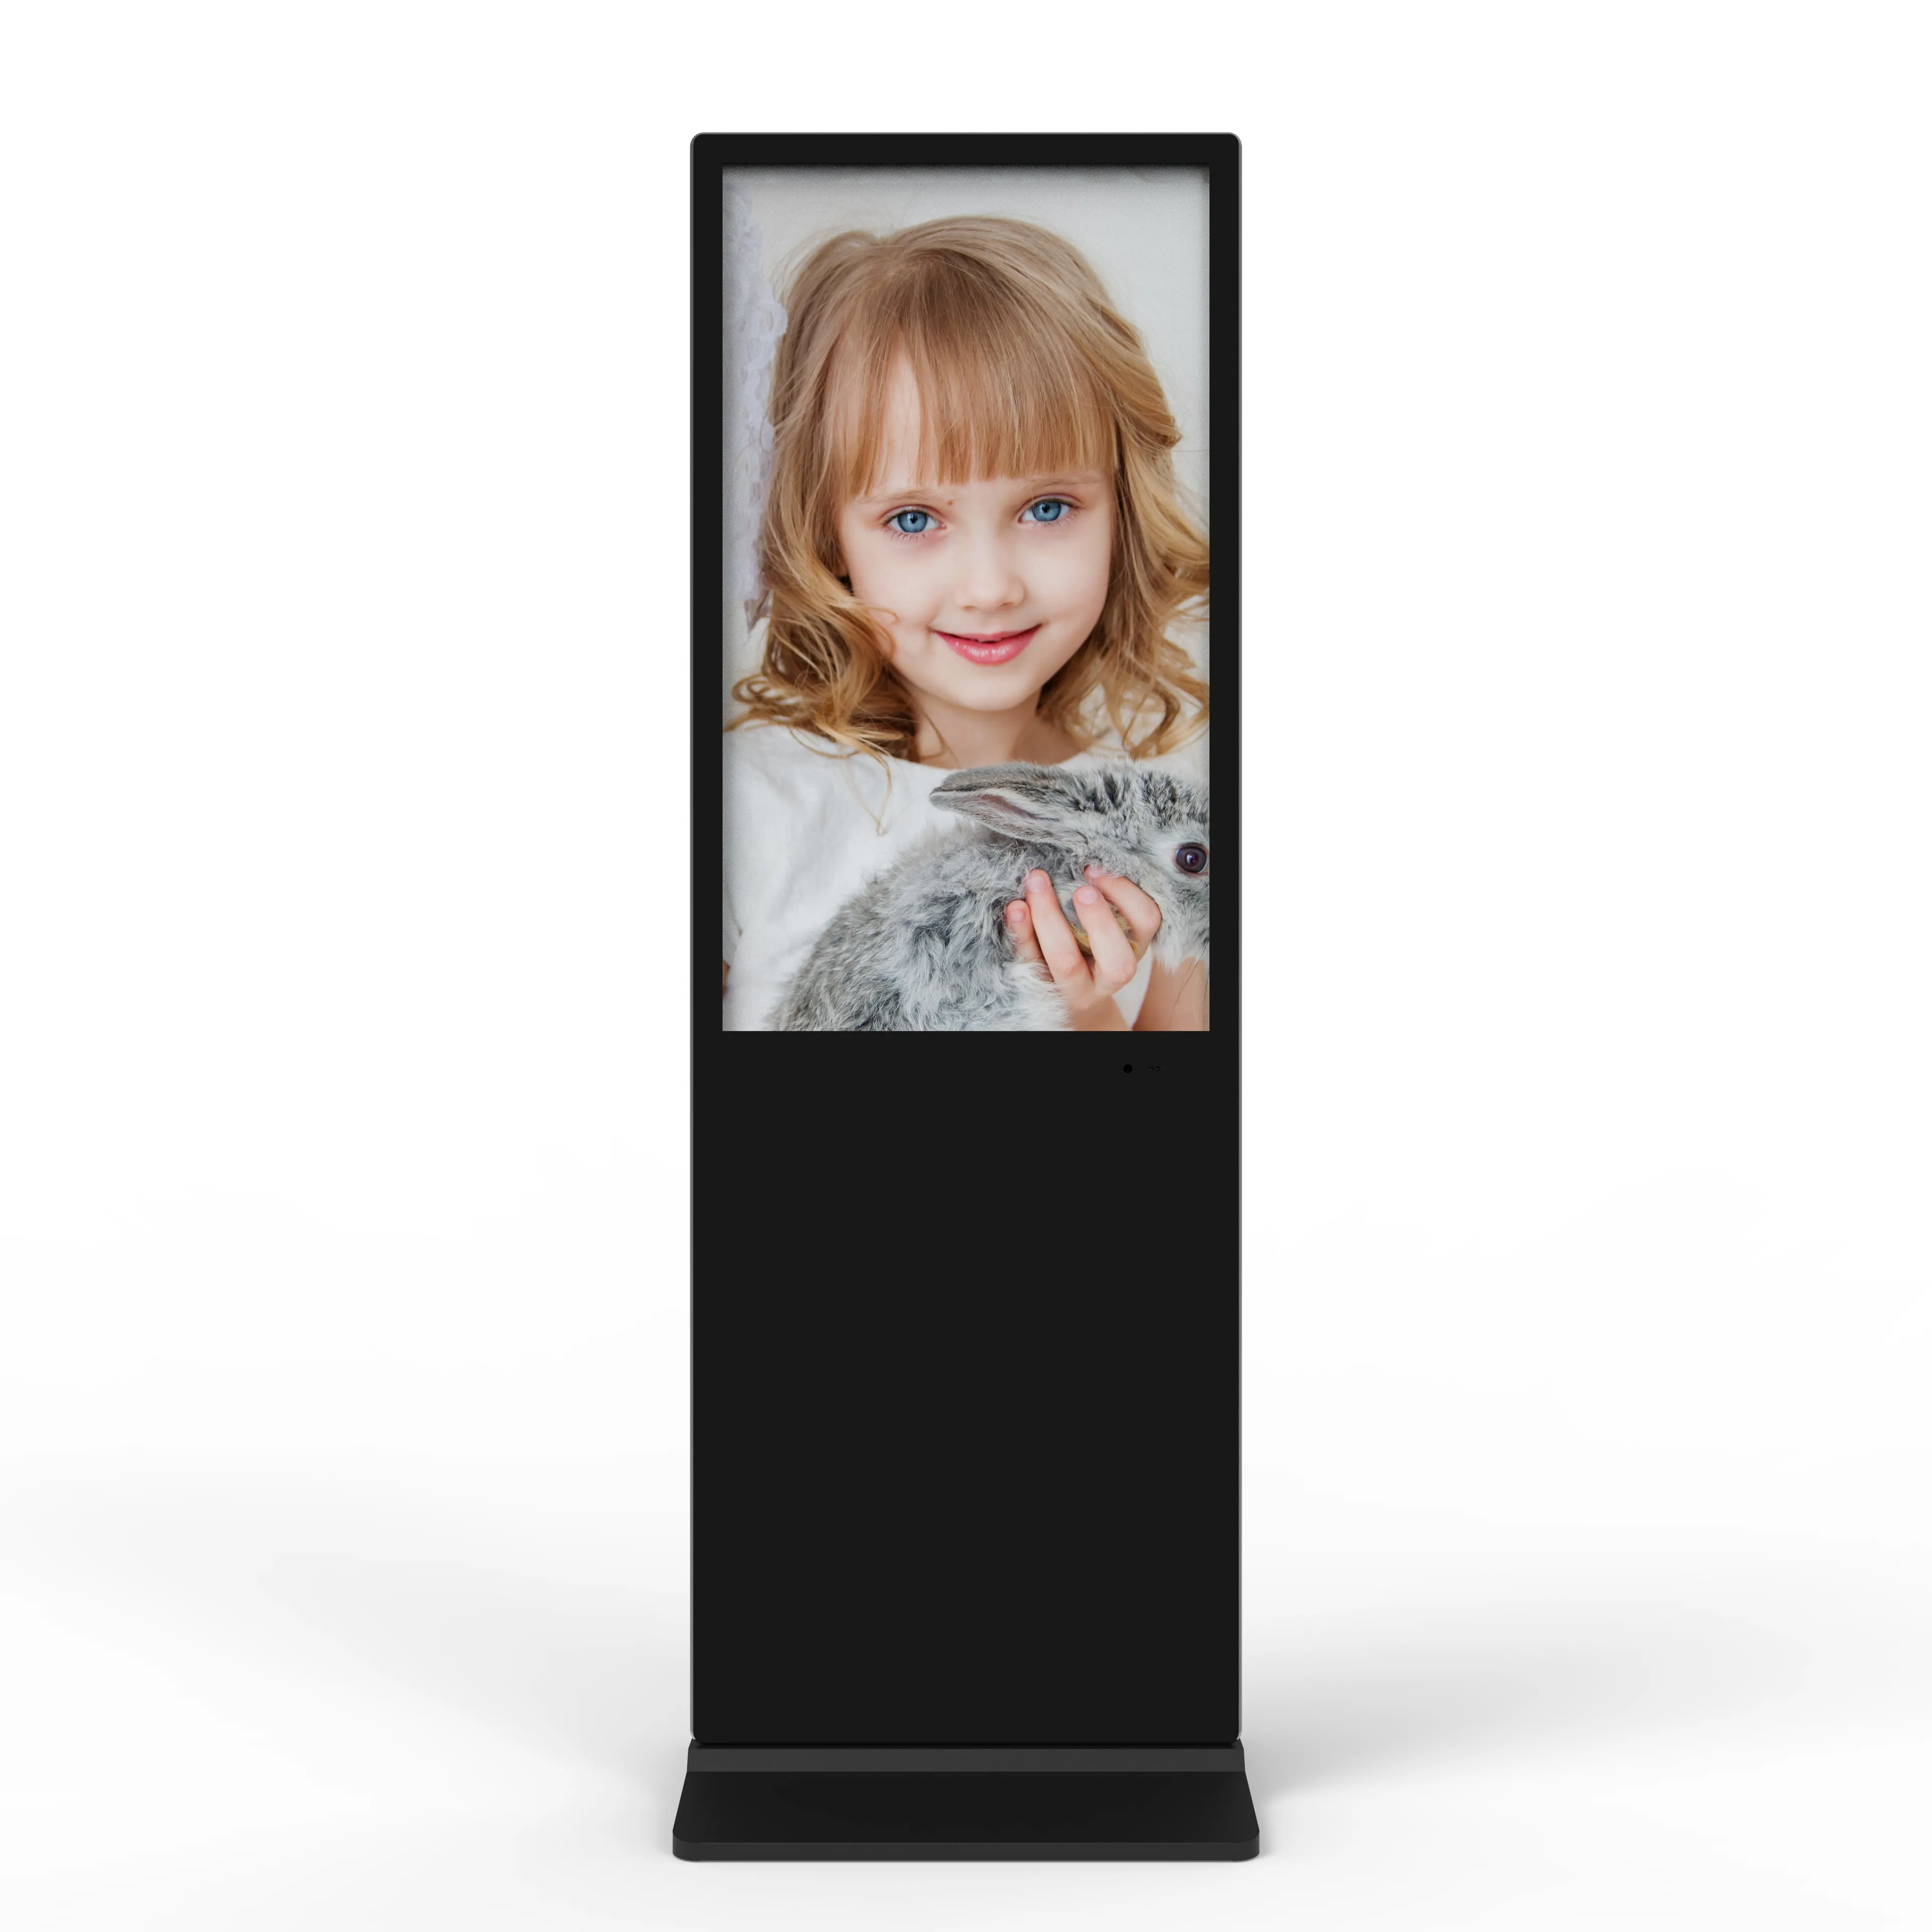 43 pollici Display Video Lcd interno Wifi Touch Screen capacitivo supermercato chiosco pubblicitario